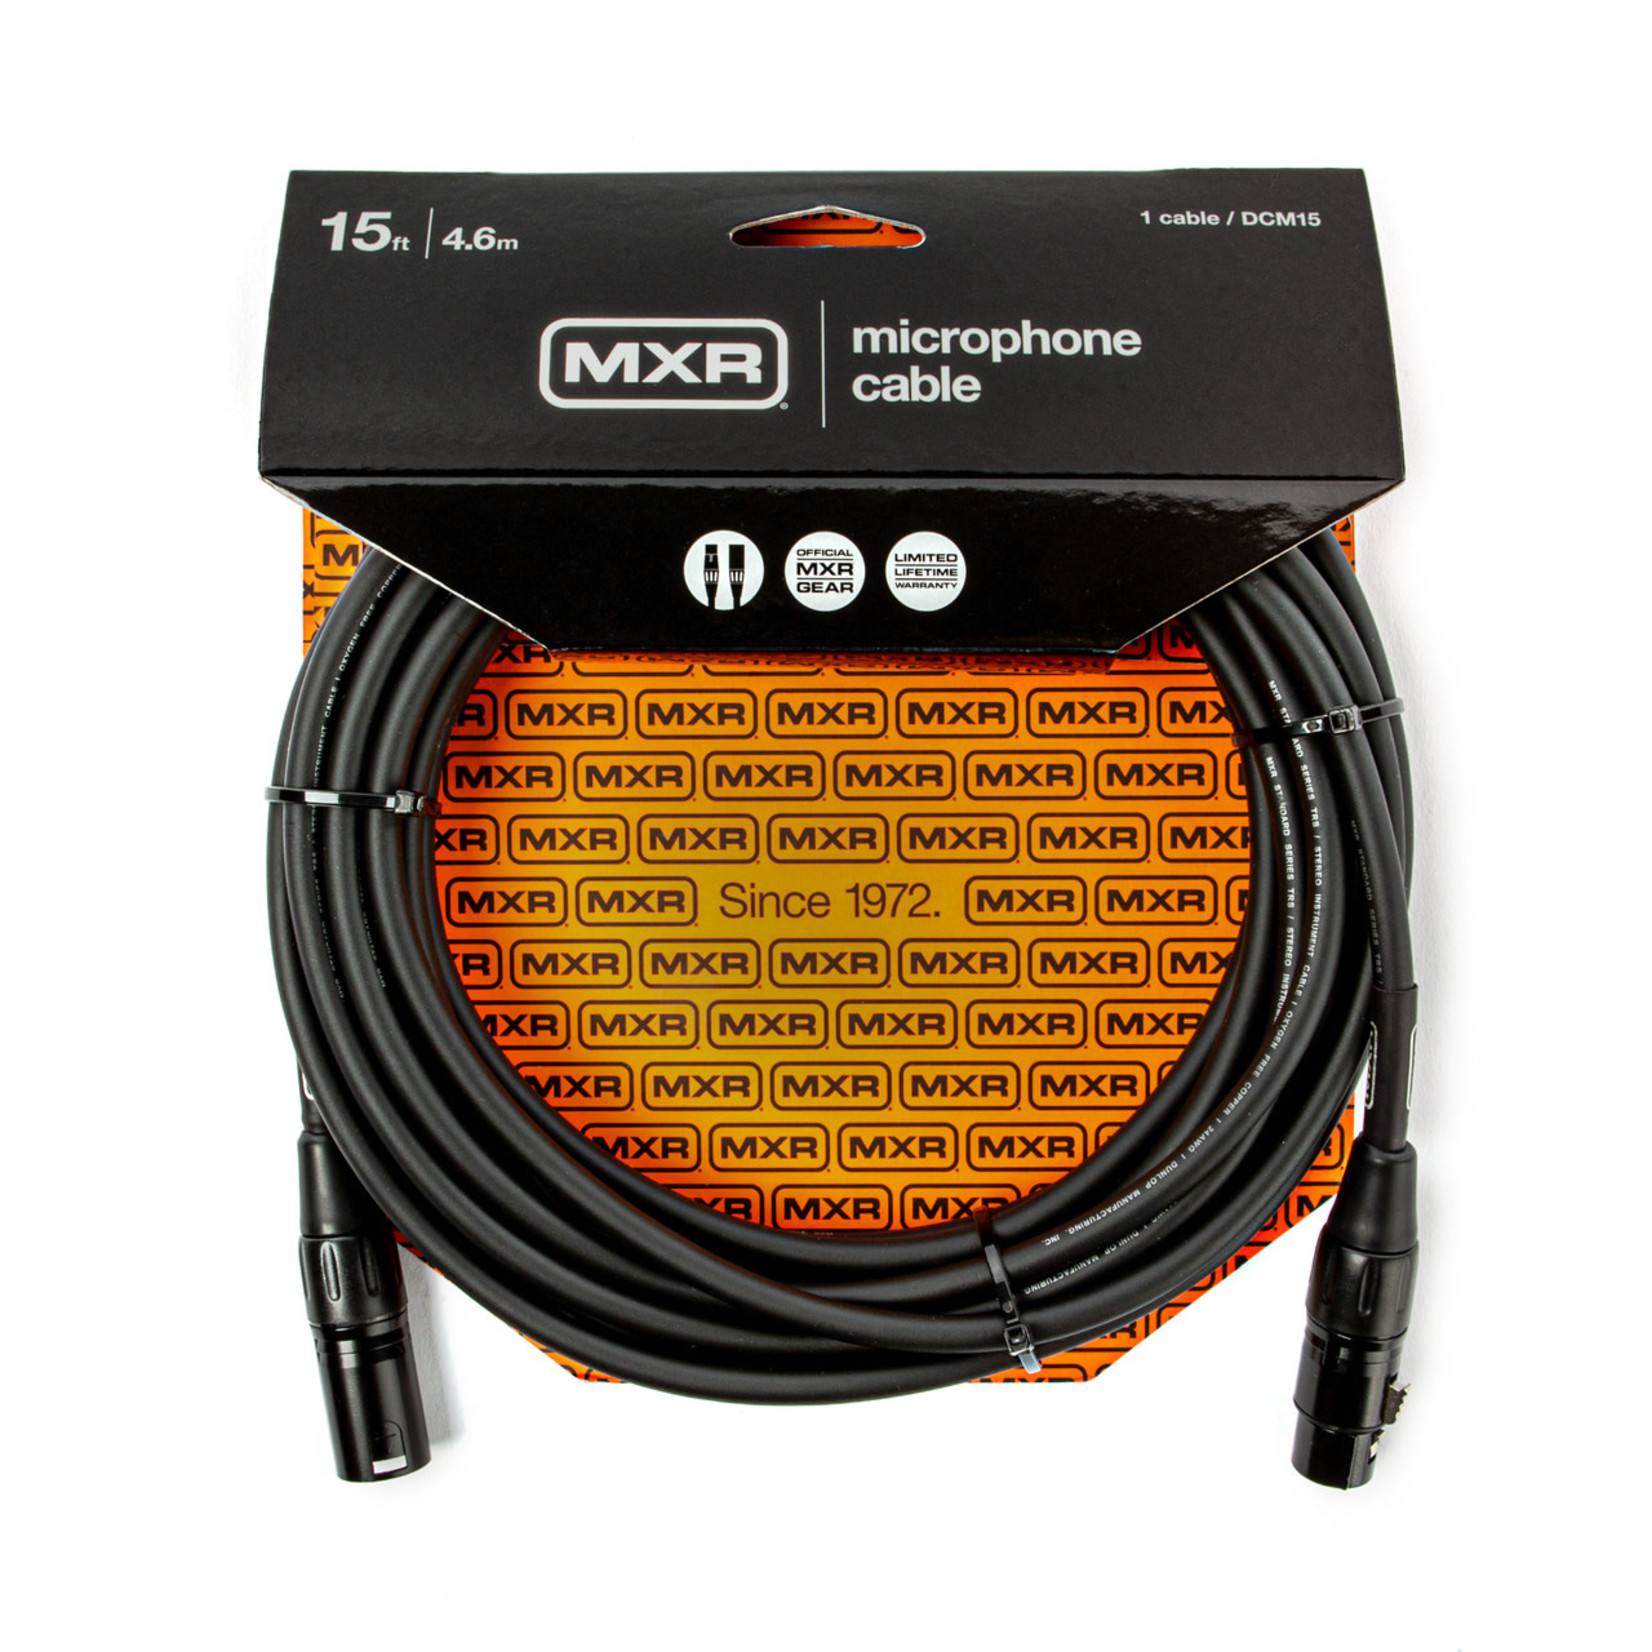 MXR MXR 15 FT Microphone Cable